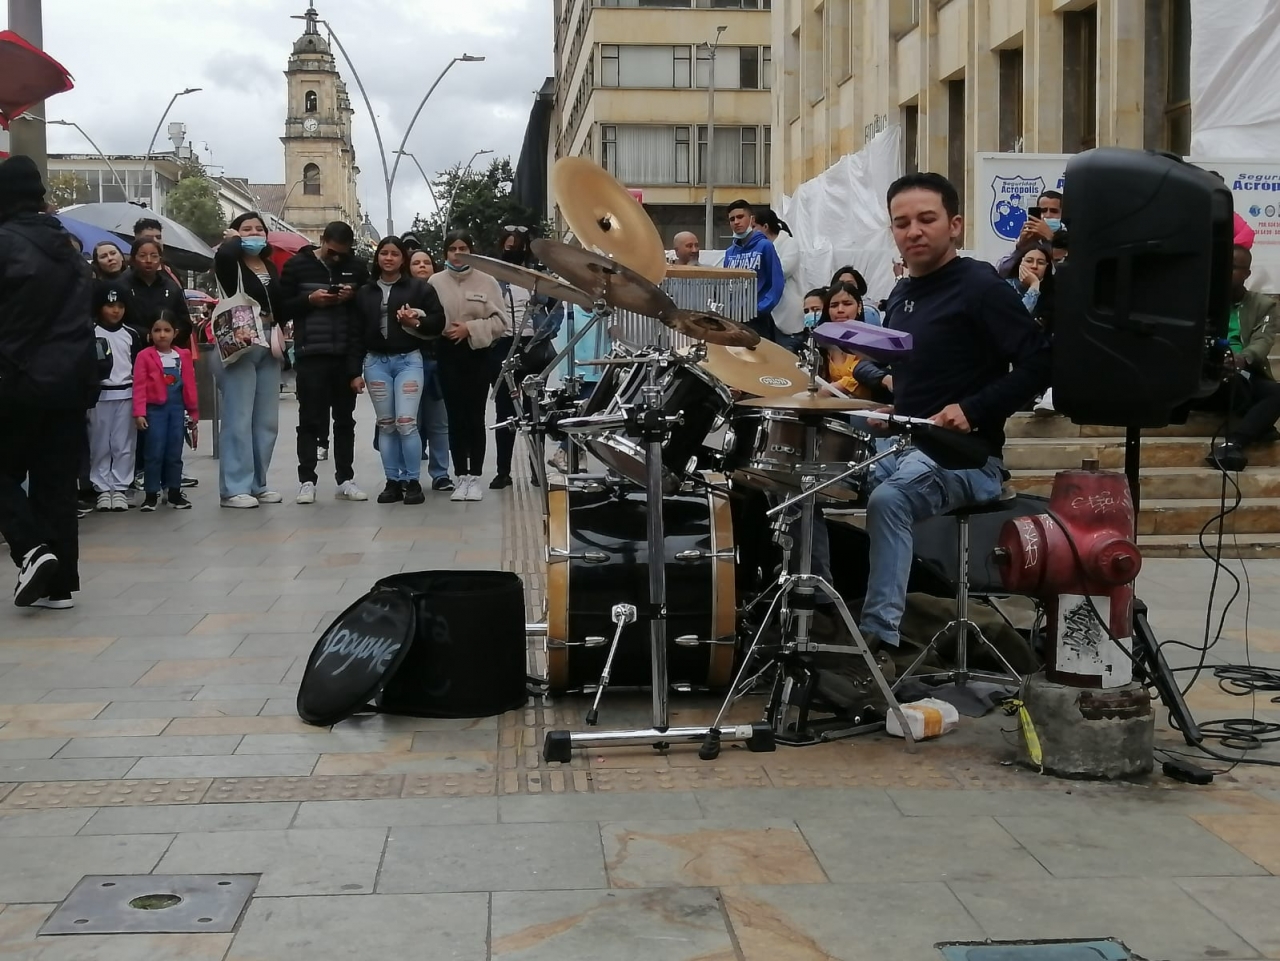 Luis Felipe Valero, el baterista errante que demuestra su pasión en la calle